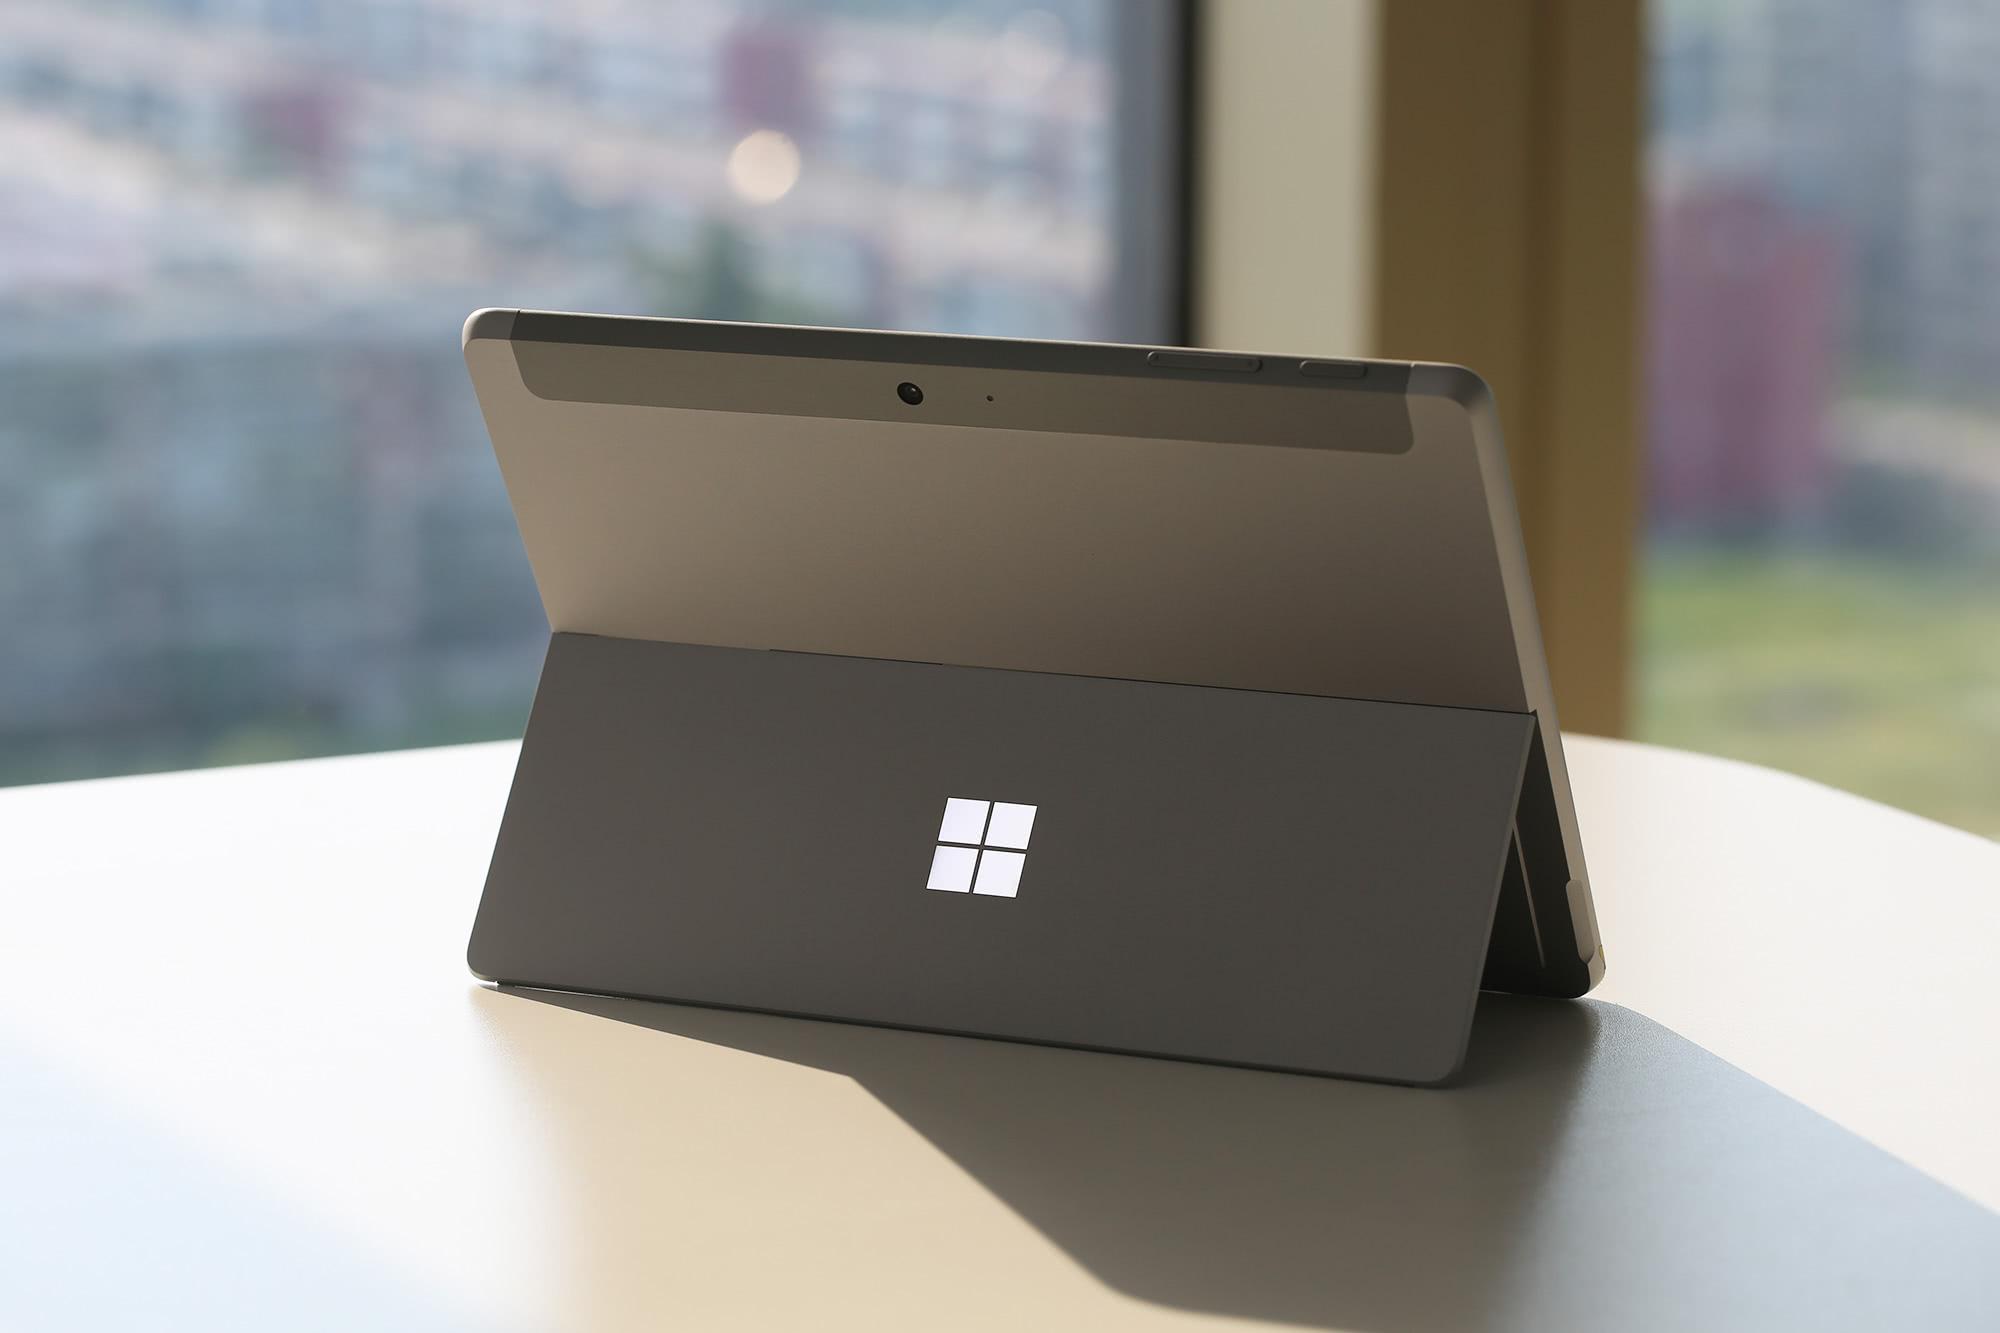 微软surface go上手图赏:更轻薄便携,堪称移动办公利器!